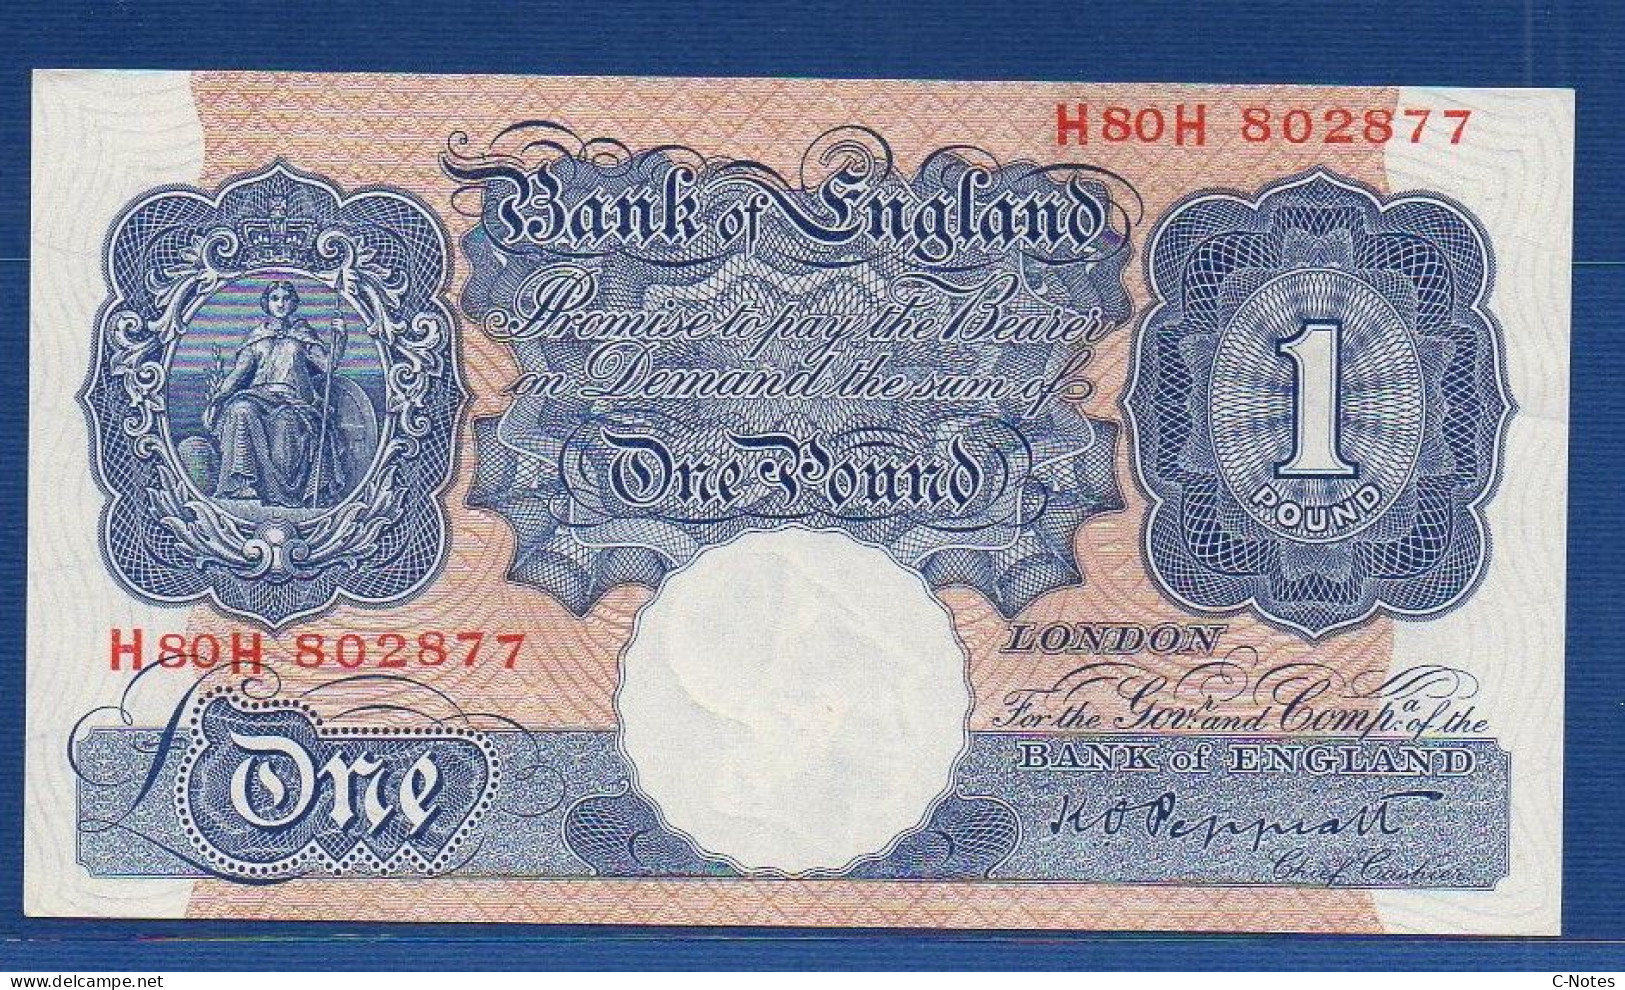 GREAT BRITAIN - P.367 – 1 Pound ND (1940 - 1948) UNC-,  S/n H80H 802877 - 1 Pound